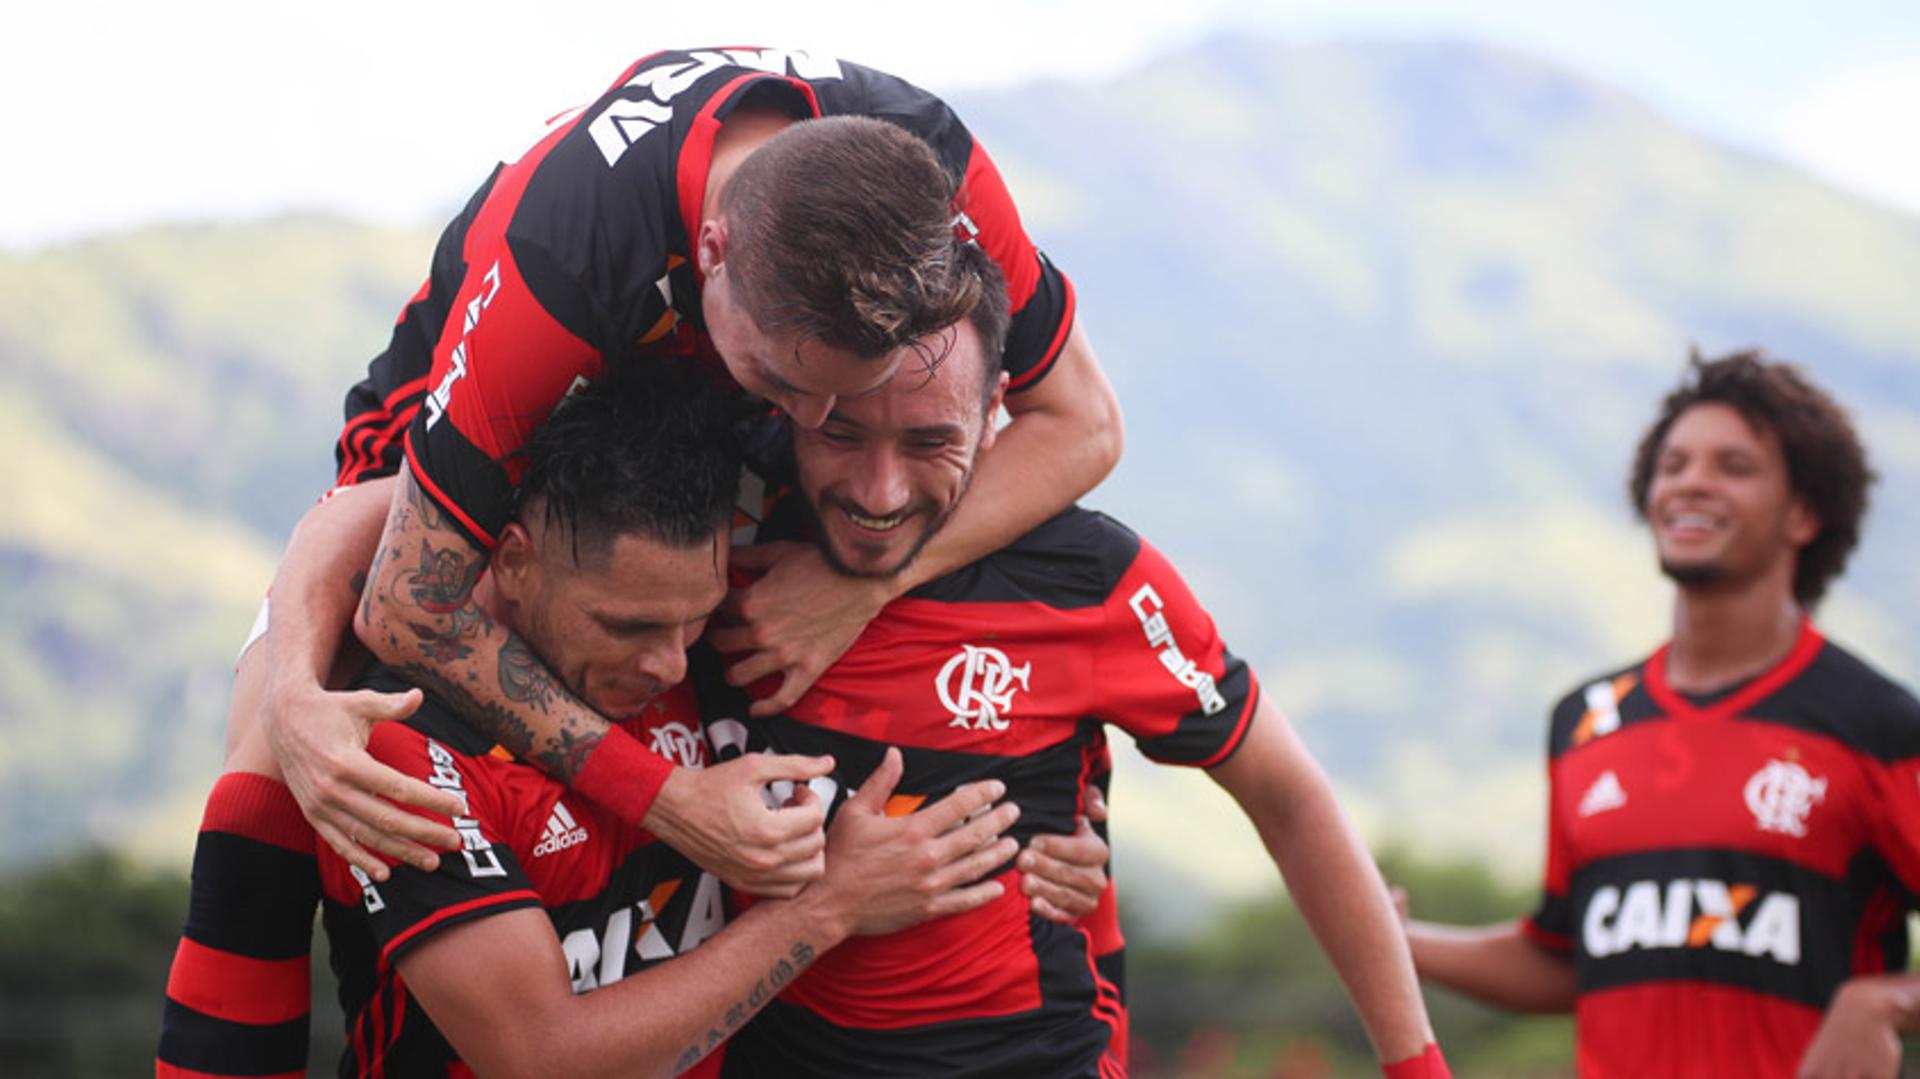 Confira as imagens da vitória do Flamengo em Moça Bonita